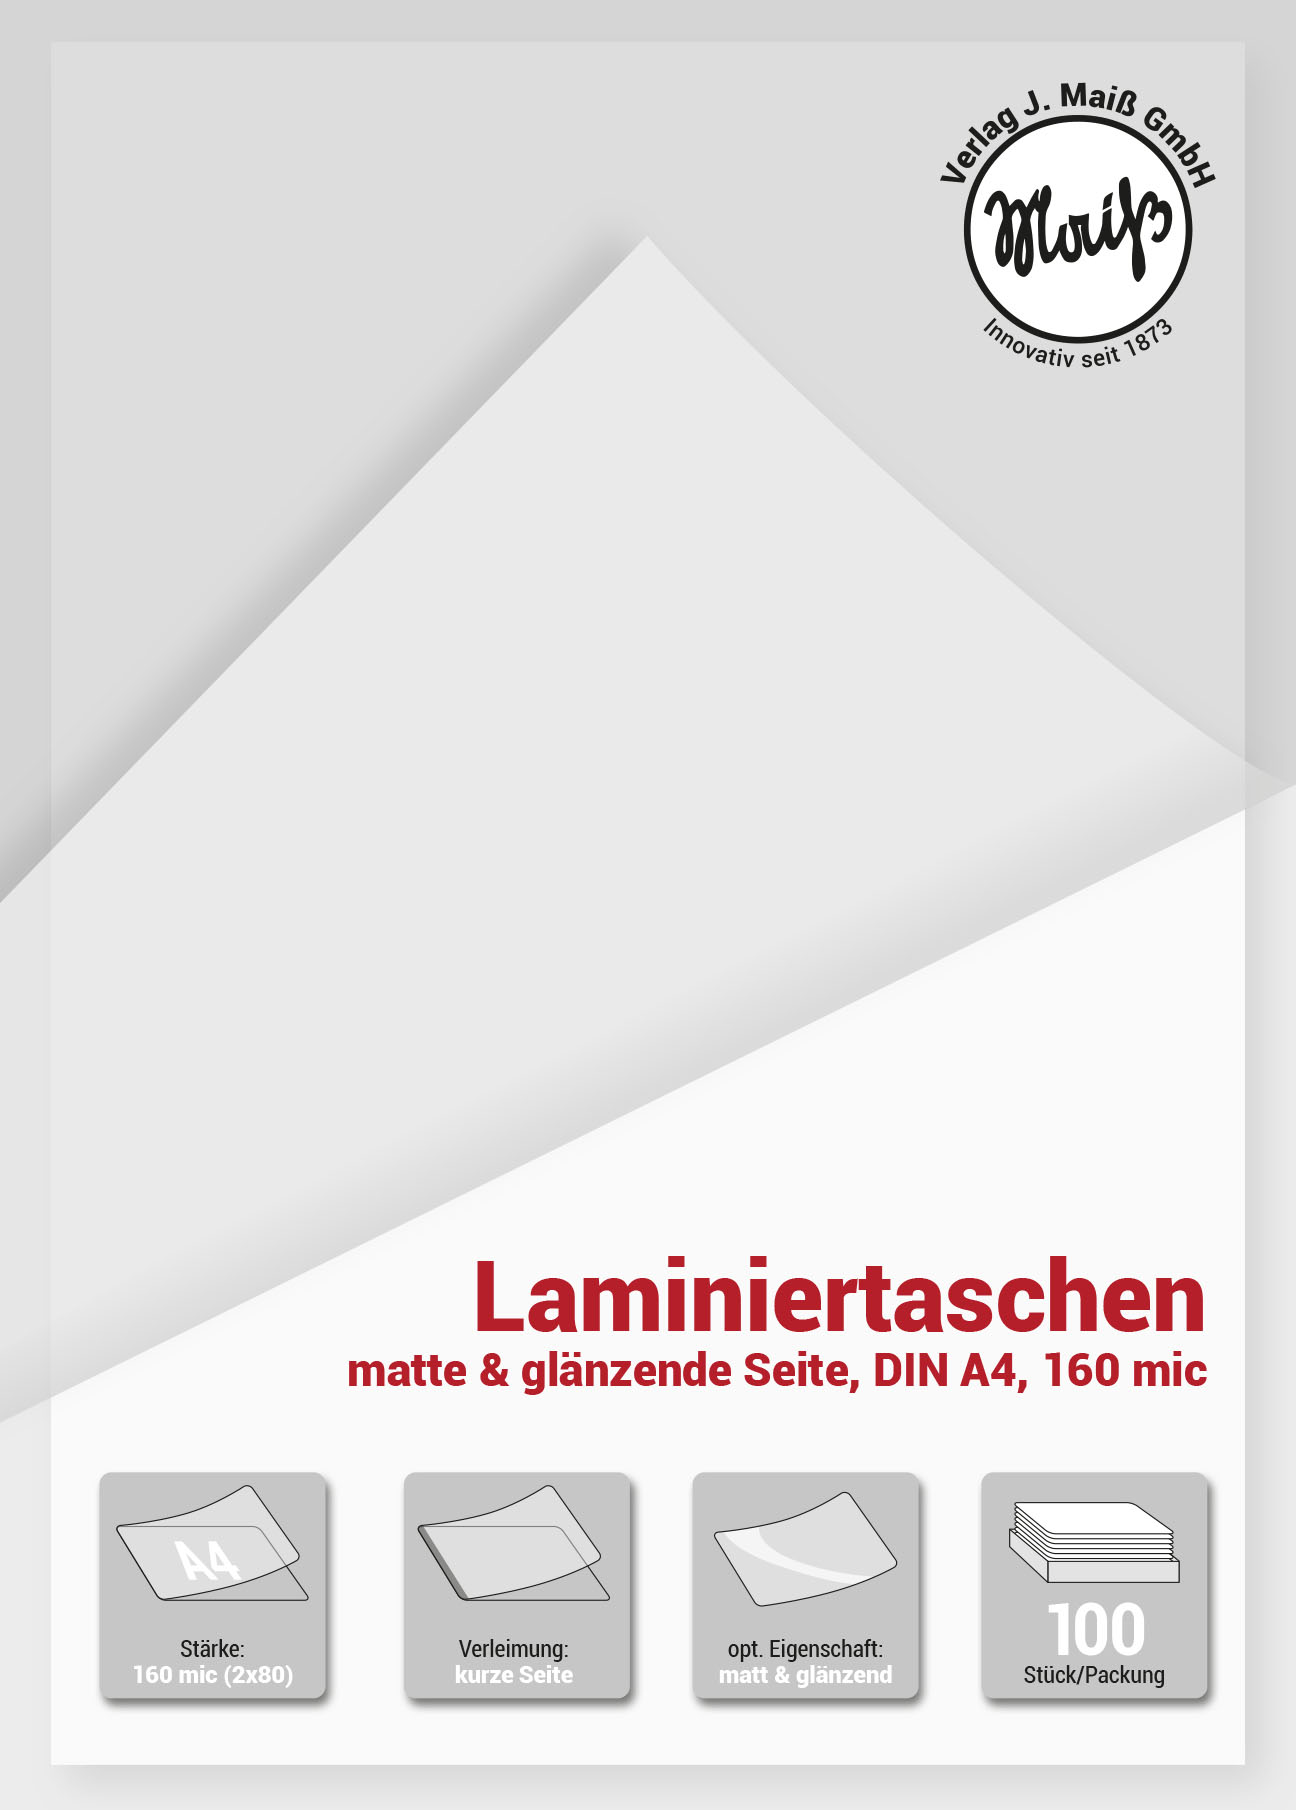 Bild 2 100x Laminierfolien DIN A4, 160mic (2x80), matt glänzend (1 Seite matt & 1 Seite glänzend), Laminiertaschen